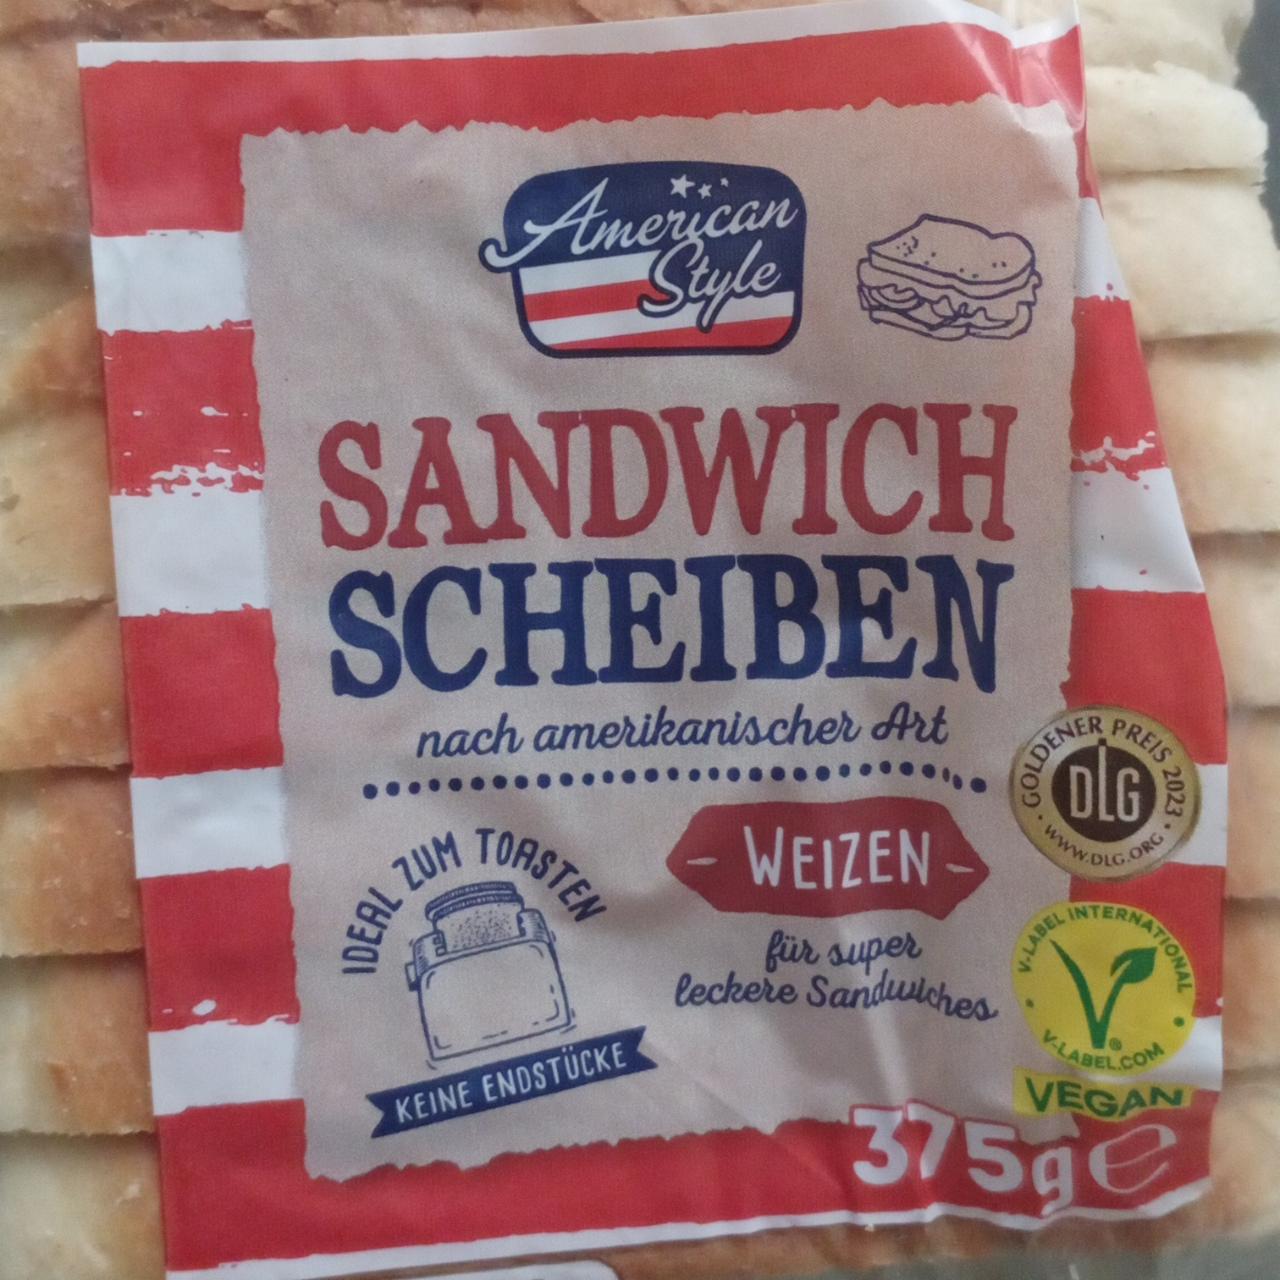 Фото - Sandwich Scheiben American style Weizen